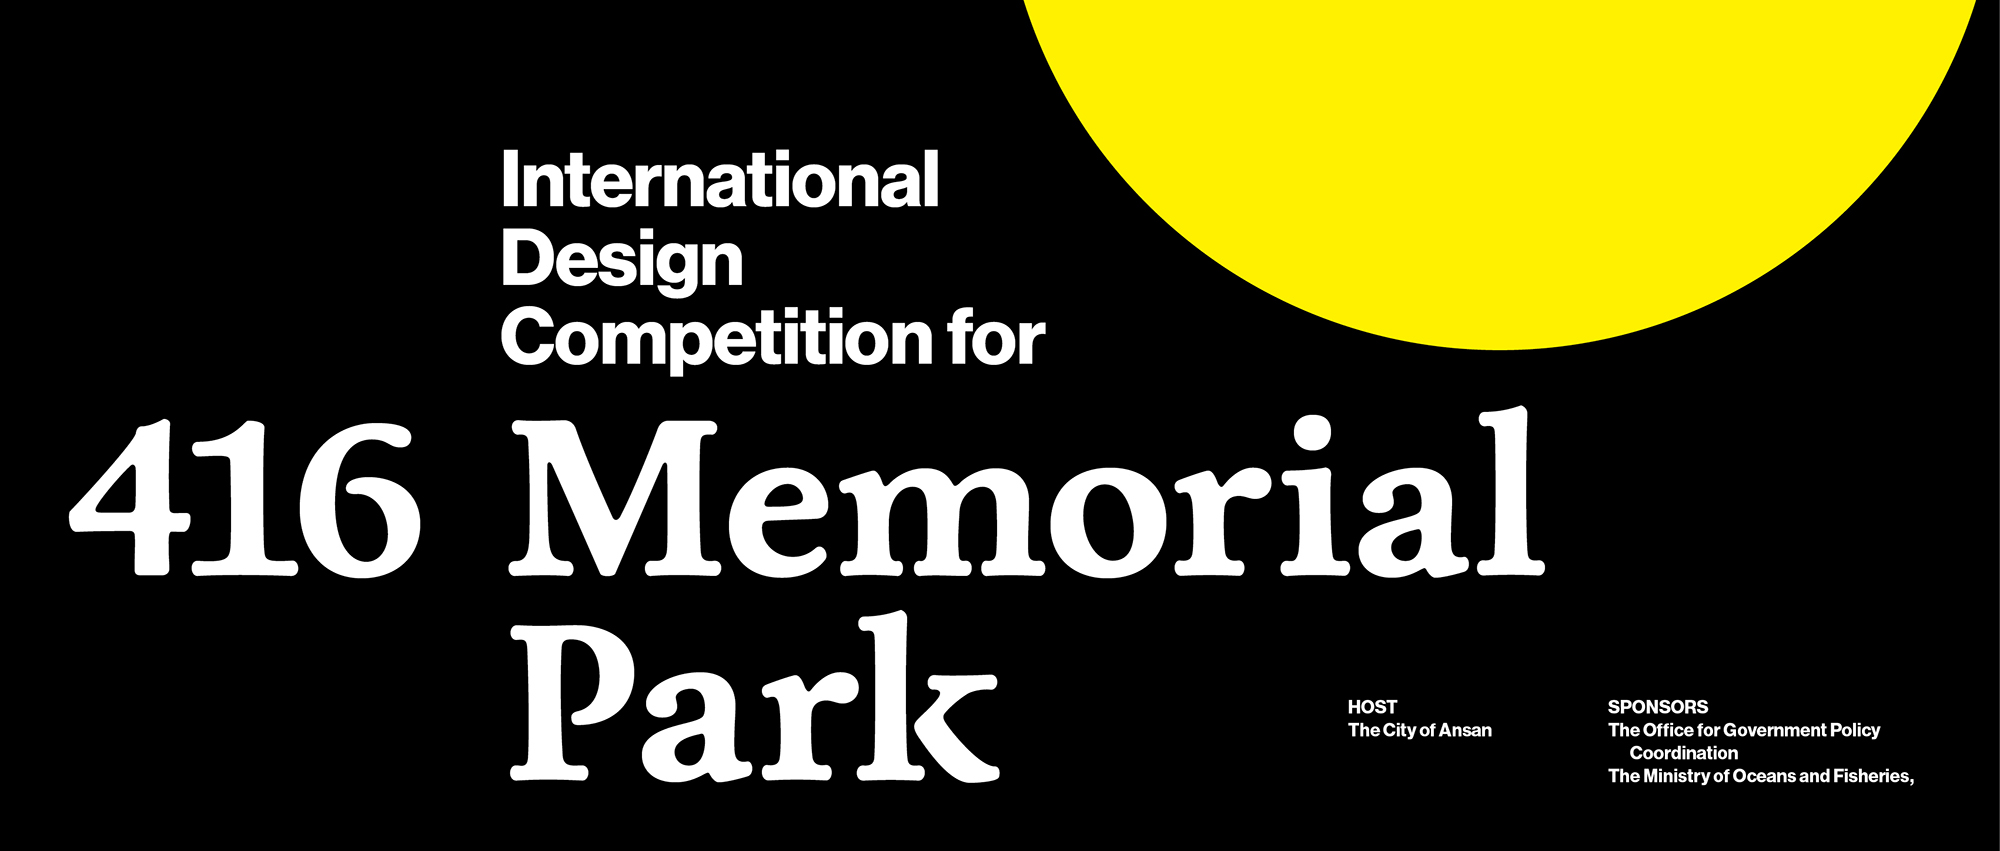 韩国 416 纪念公园国际设计大赛